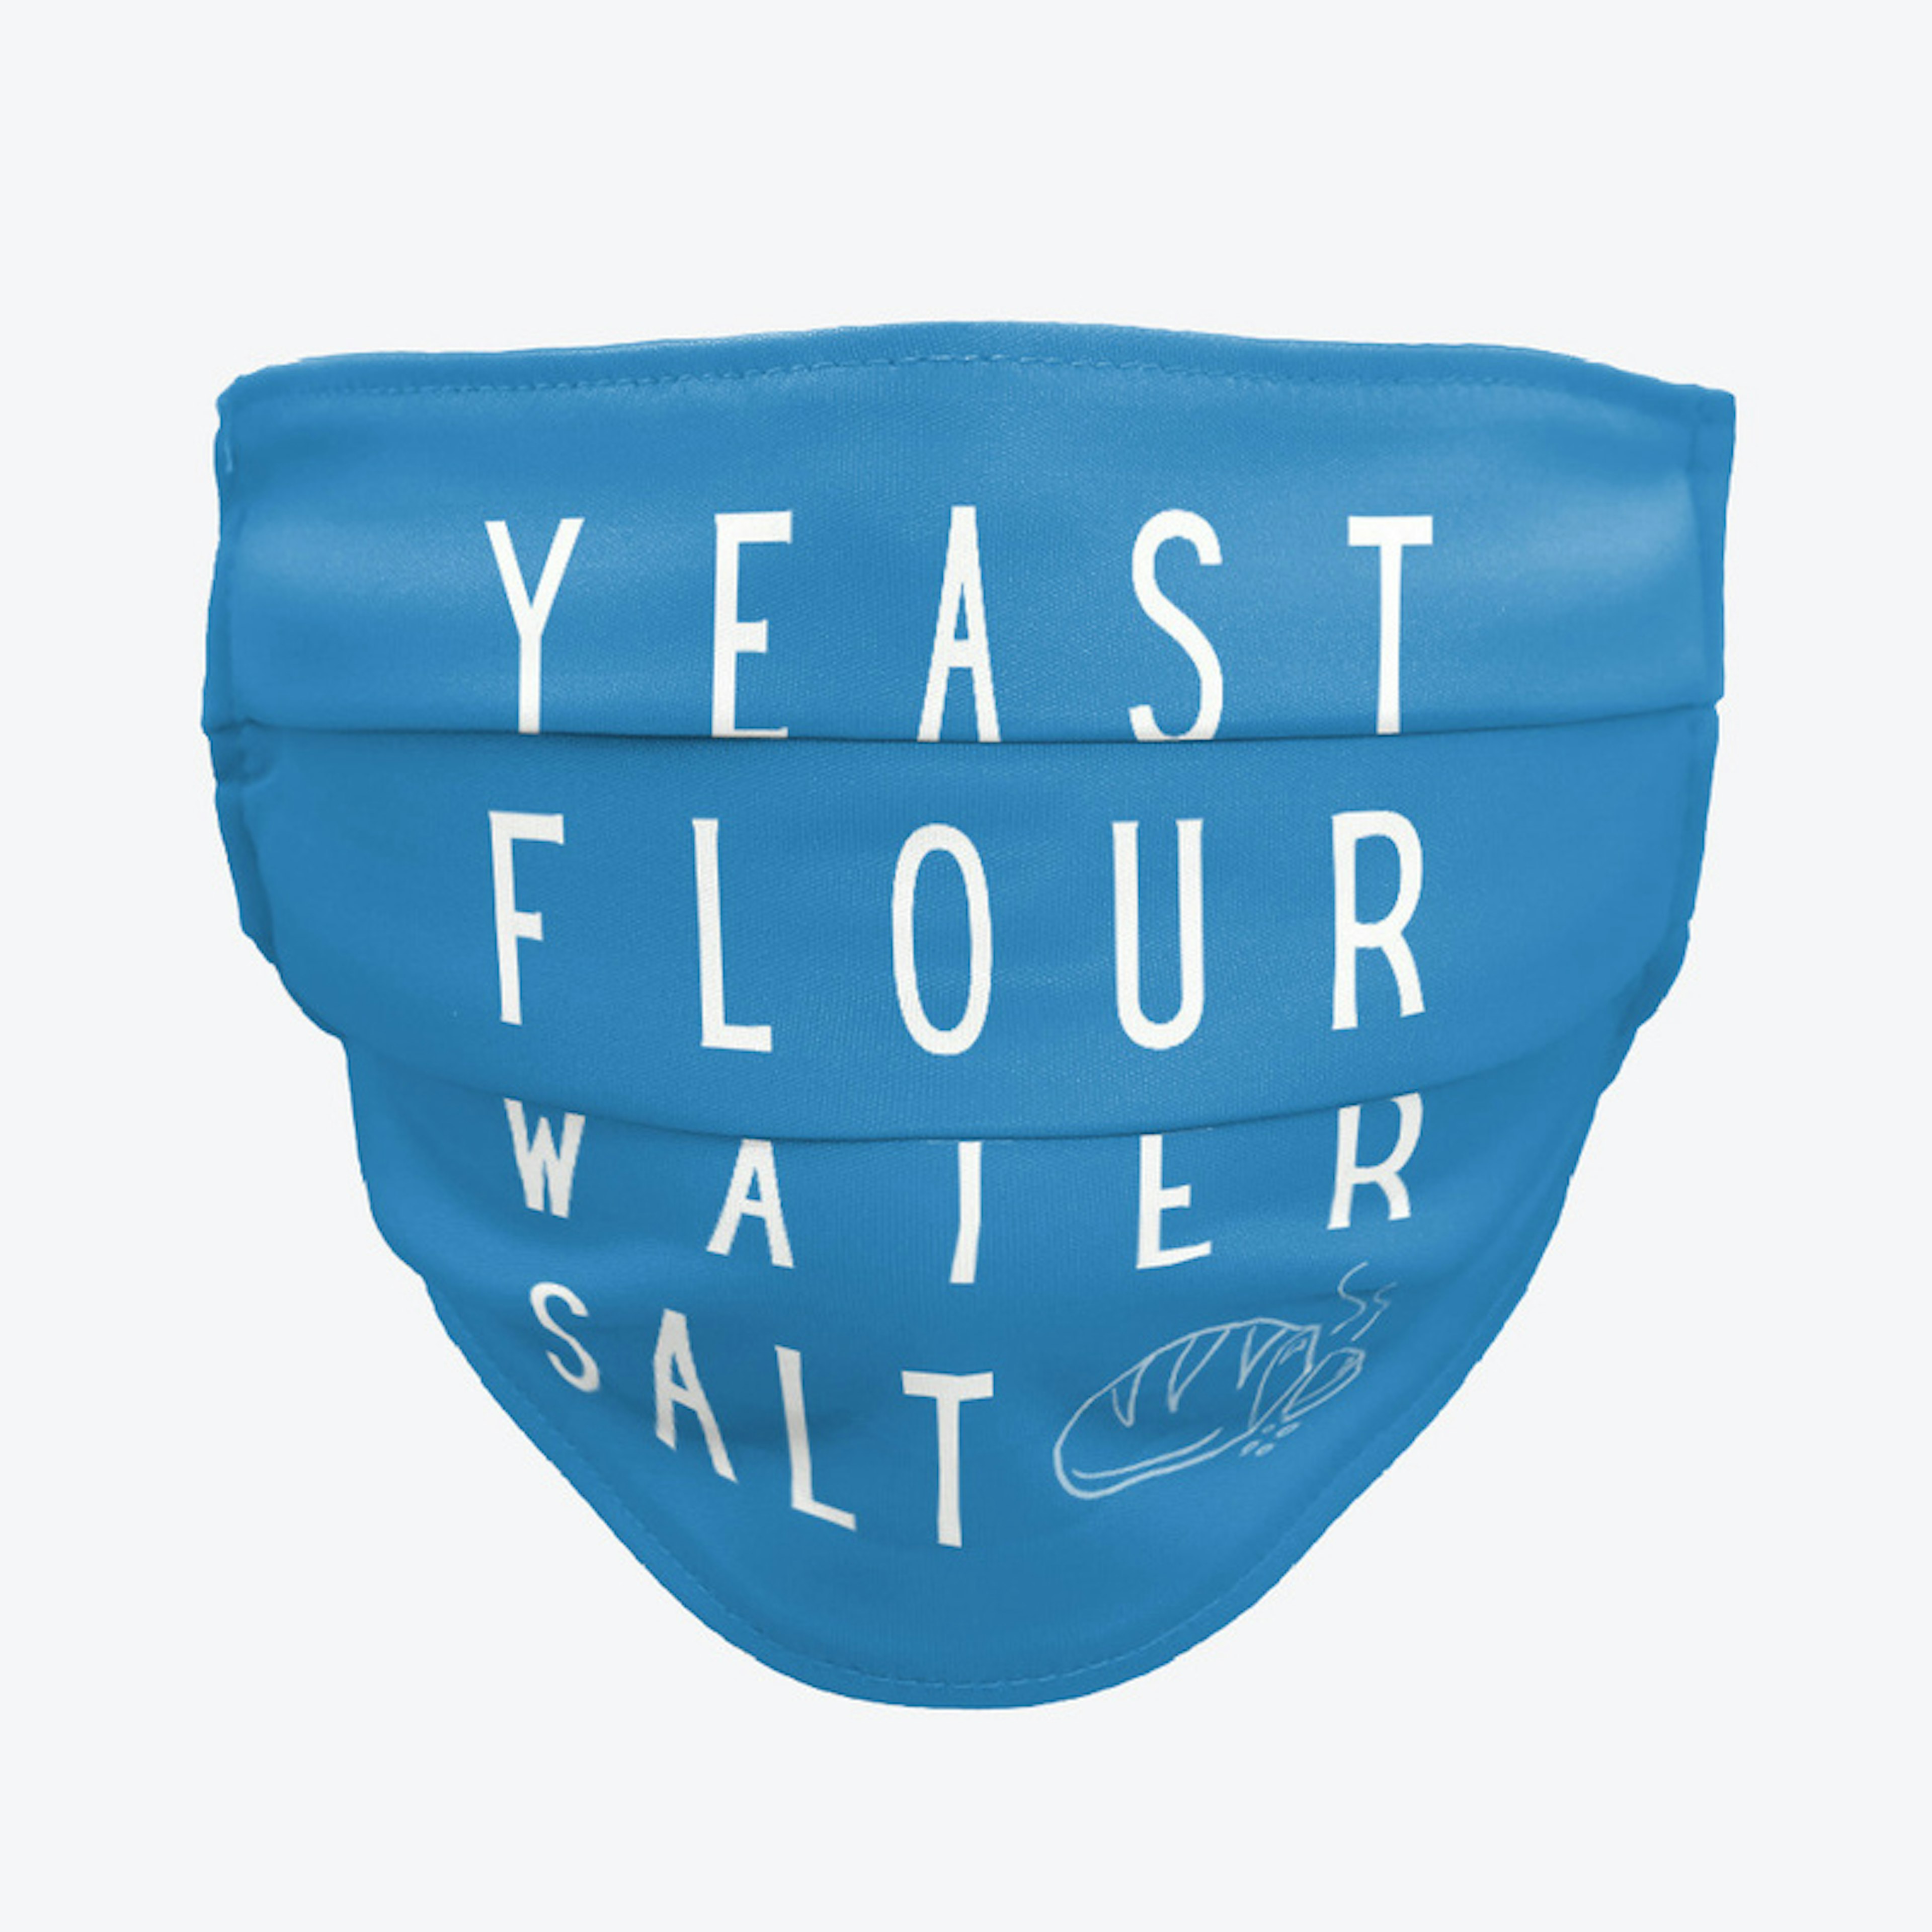 Yeast + Flour + Water + Salt = Bread